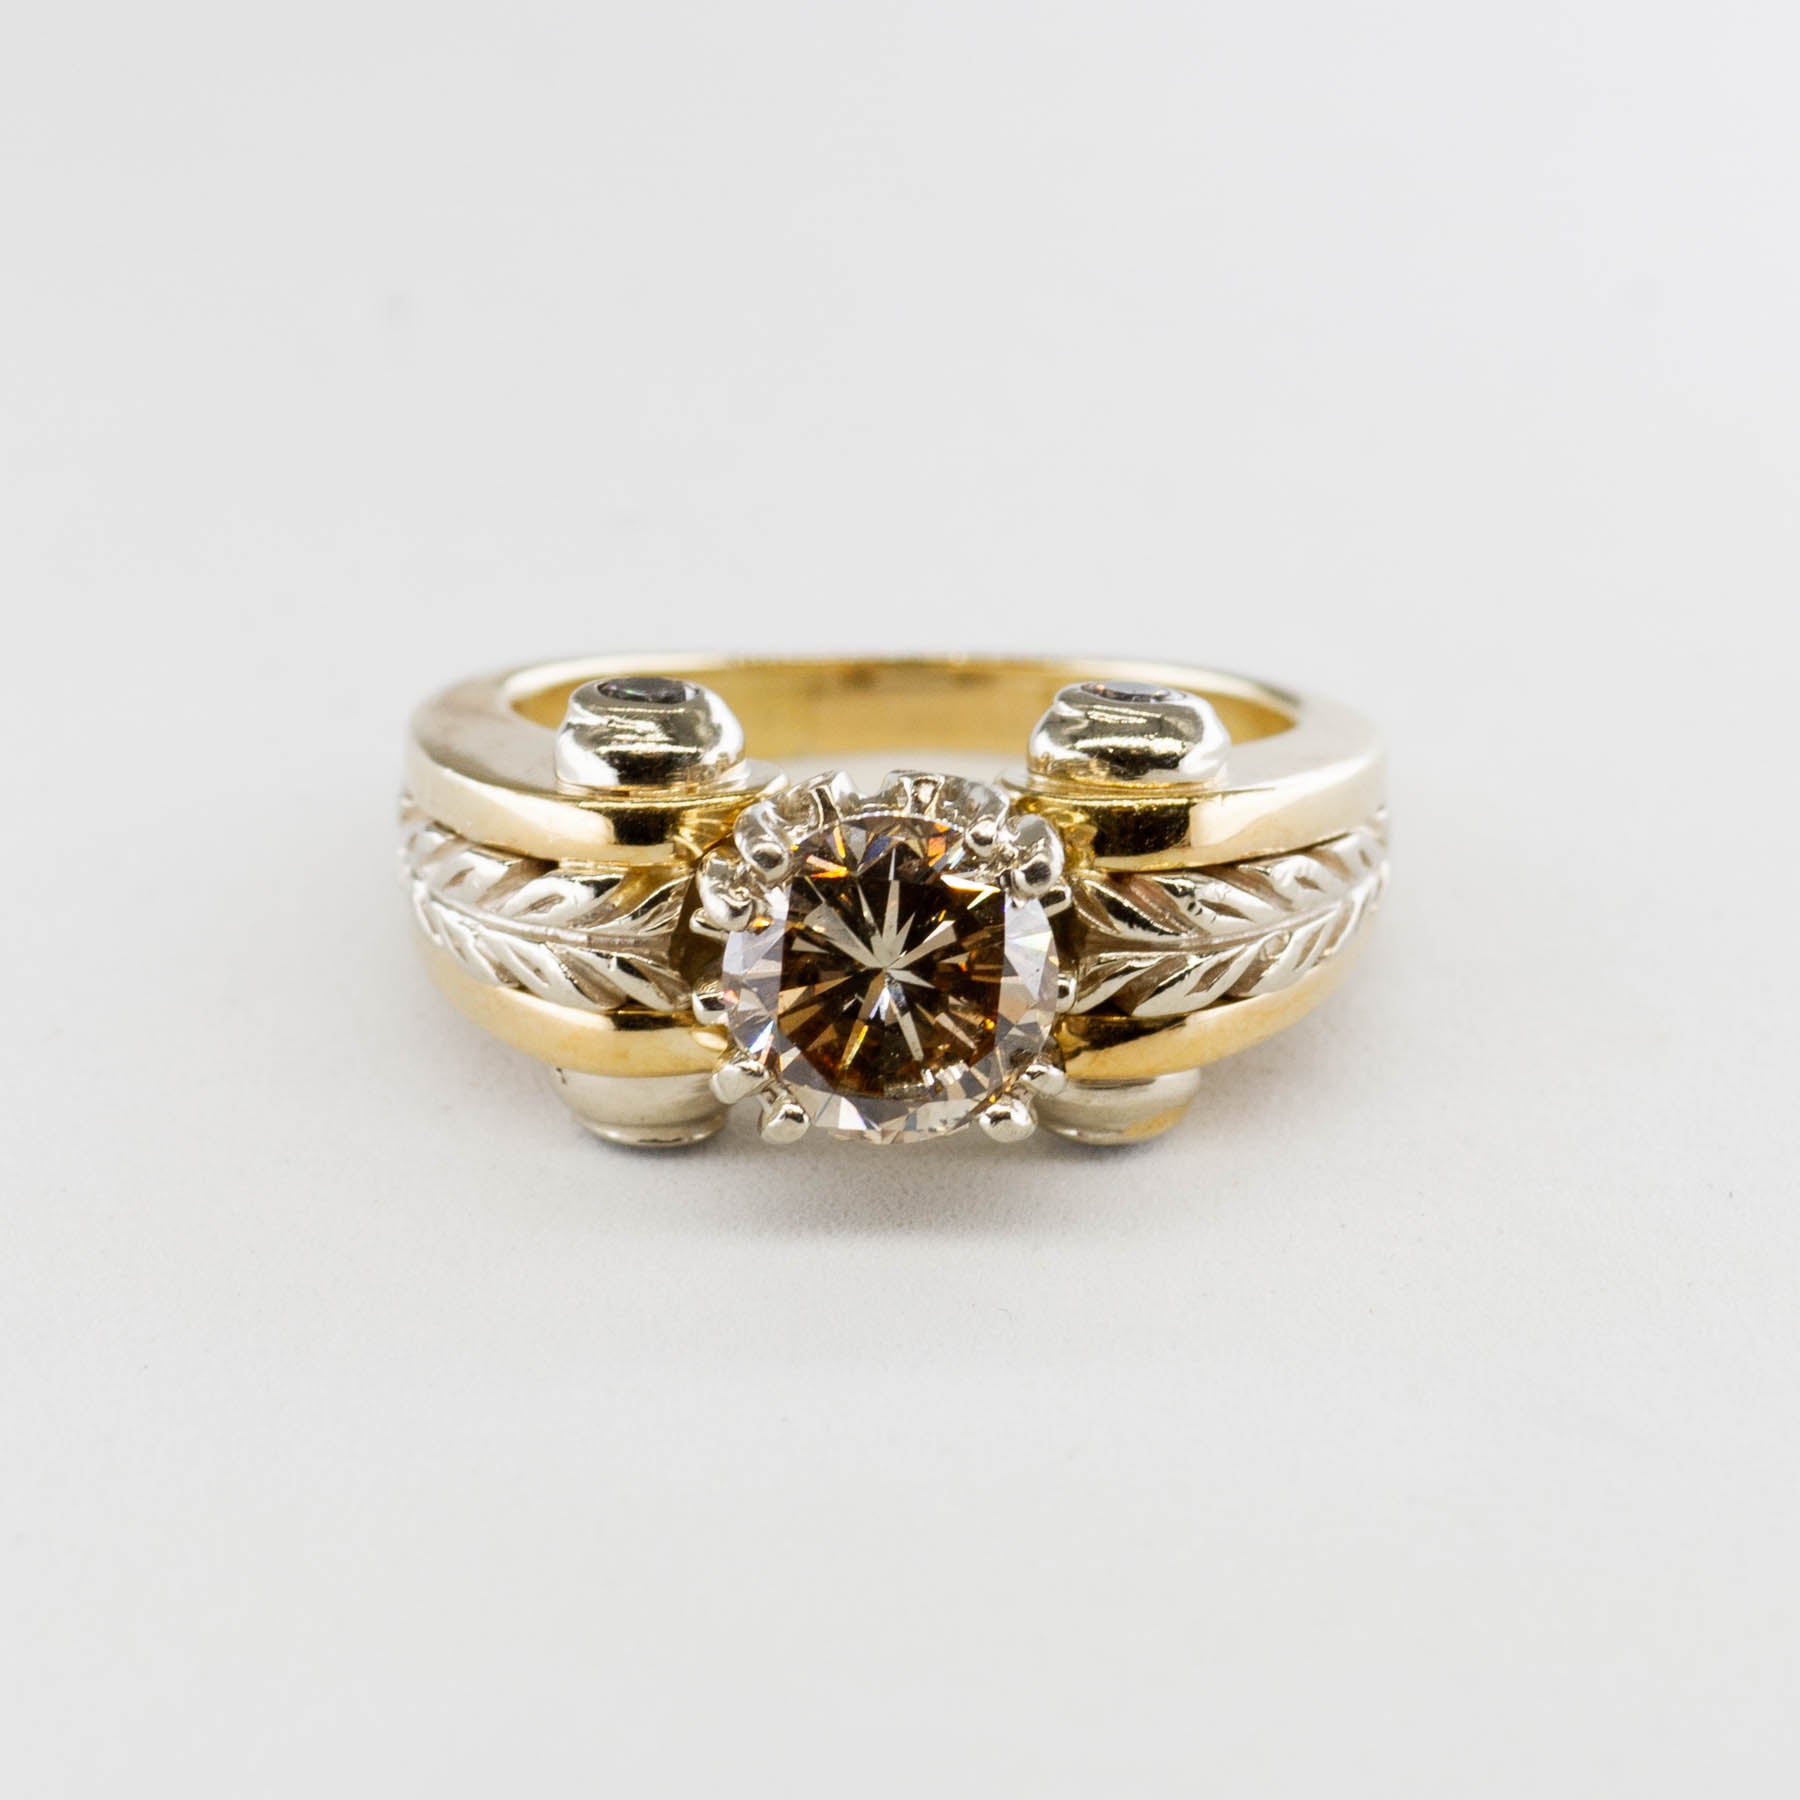 Unique Champagne Diamond Engagement Ring | 1.64 ctw, SZ 6.75 |